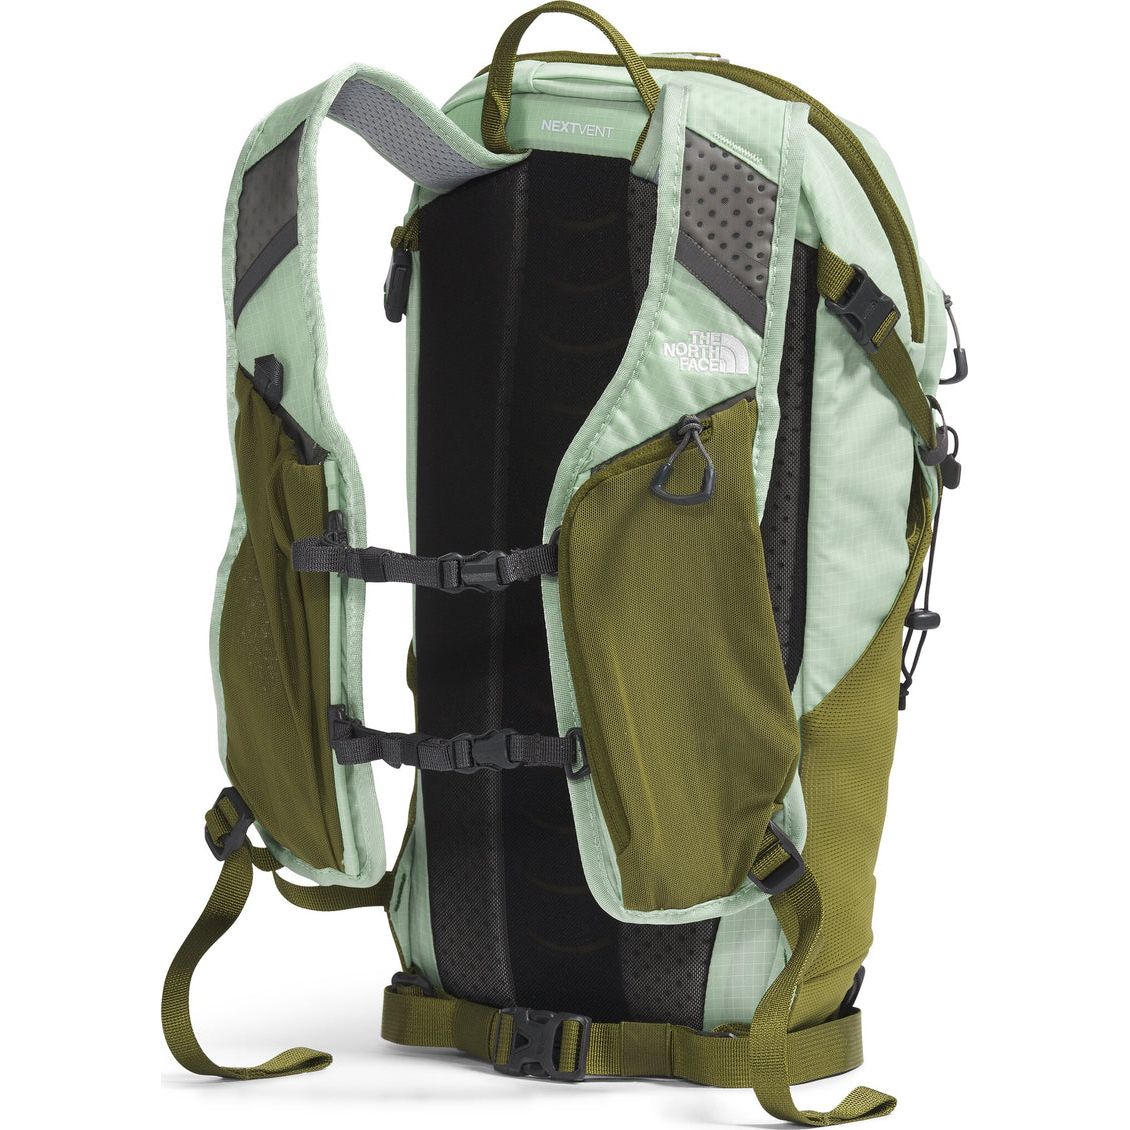 Sac à dos Trail Lite 12||Trail Lite 12 - Backpack - Misty Sage/Forest Olive